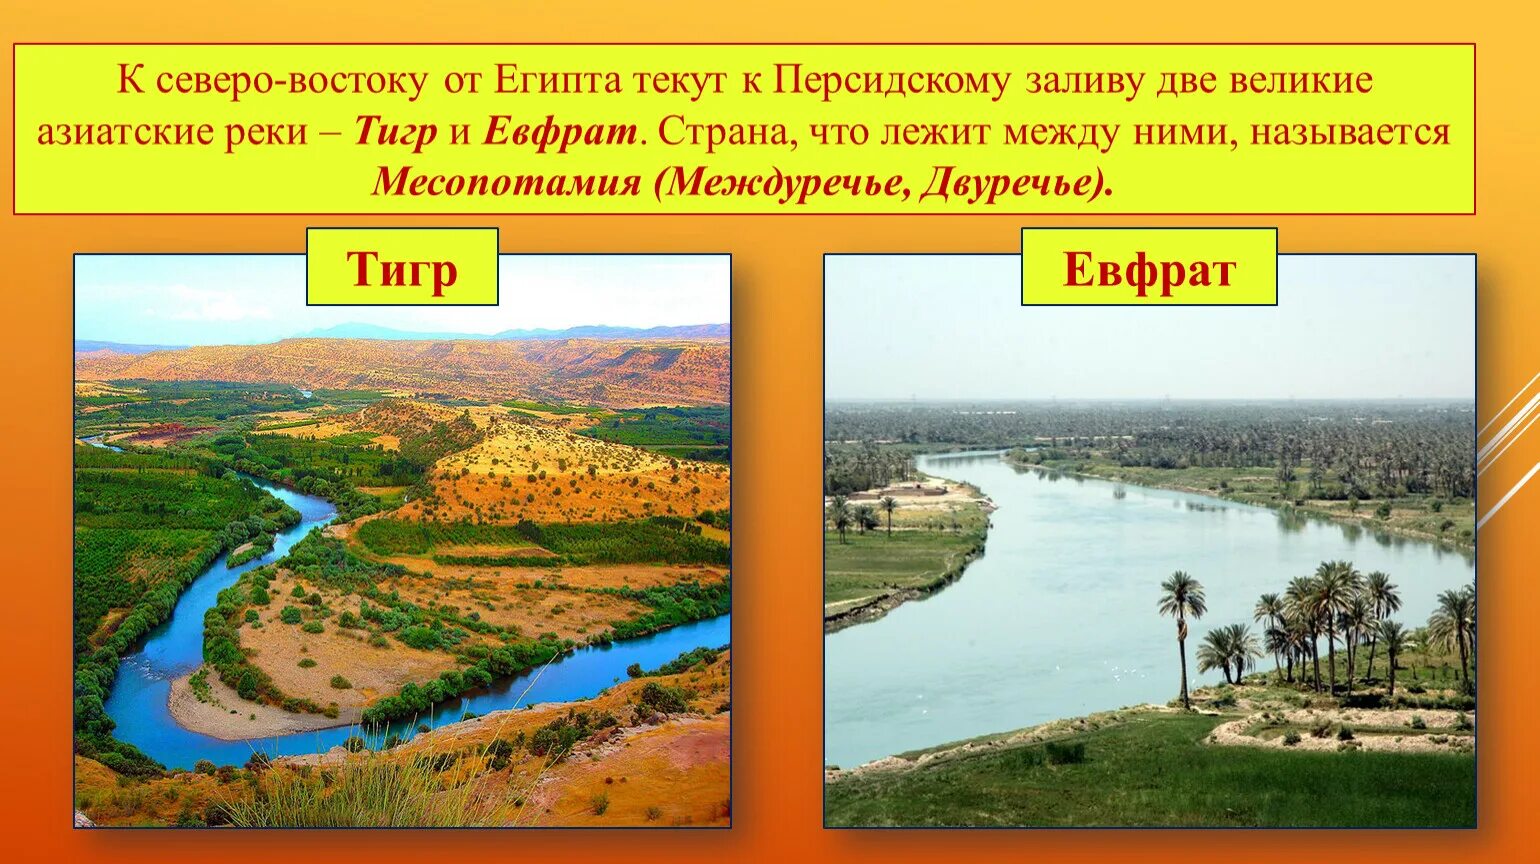 Река тигр в египте. Устье рек тигра и Евфрата. Река тигр Месопотамия. Реки Месопотамии Ефрат.